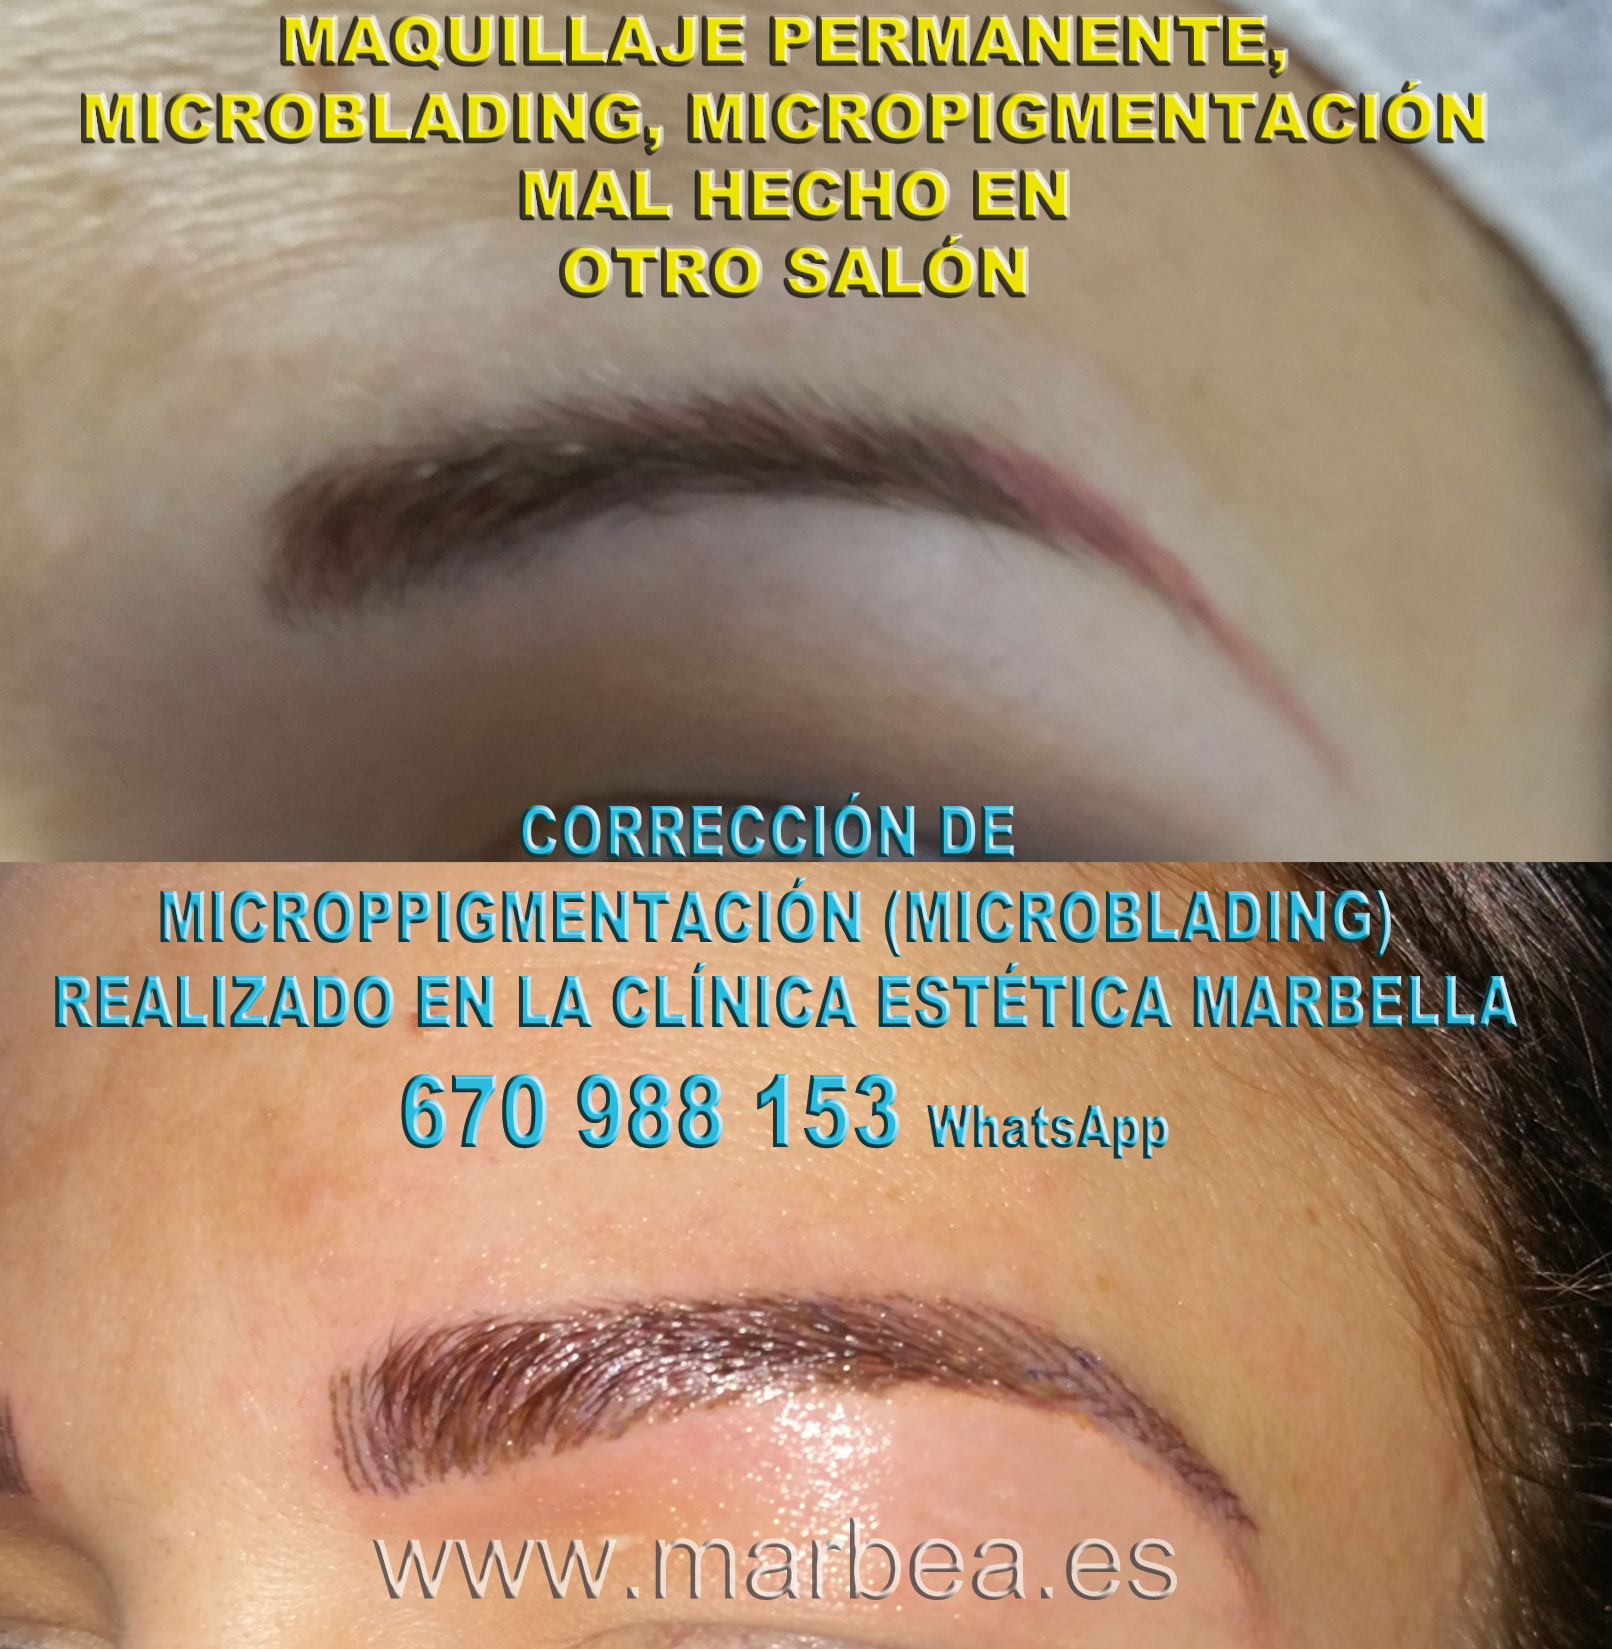 corrección de maquillaje permanente en cejas clínica estética maquillaje permanete ofrece corrección de cejas mal tatuadas,micropigmentación correctiva cejas mal hecha